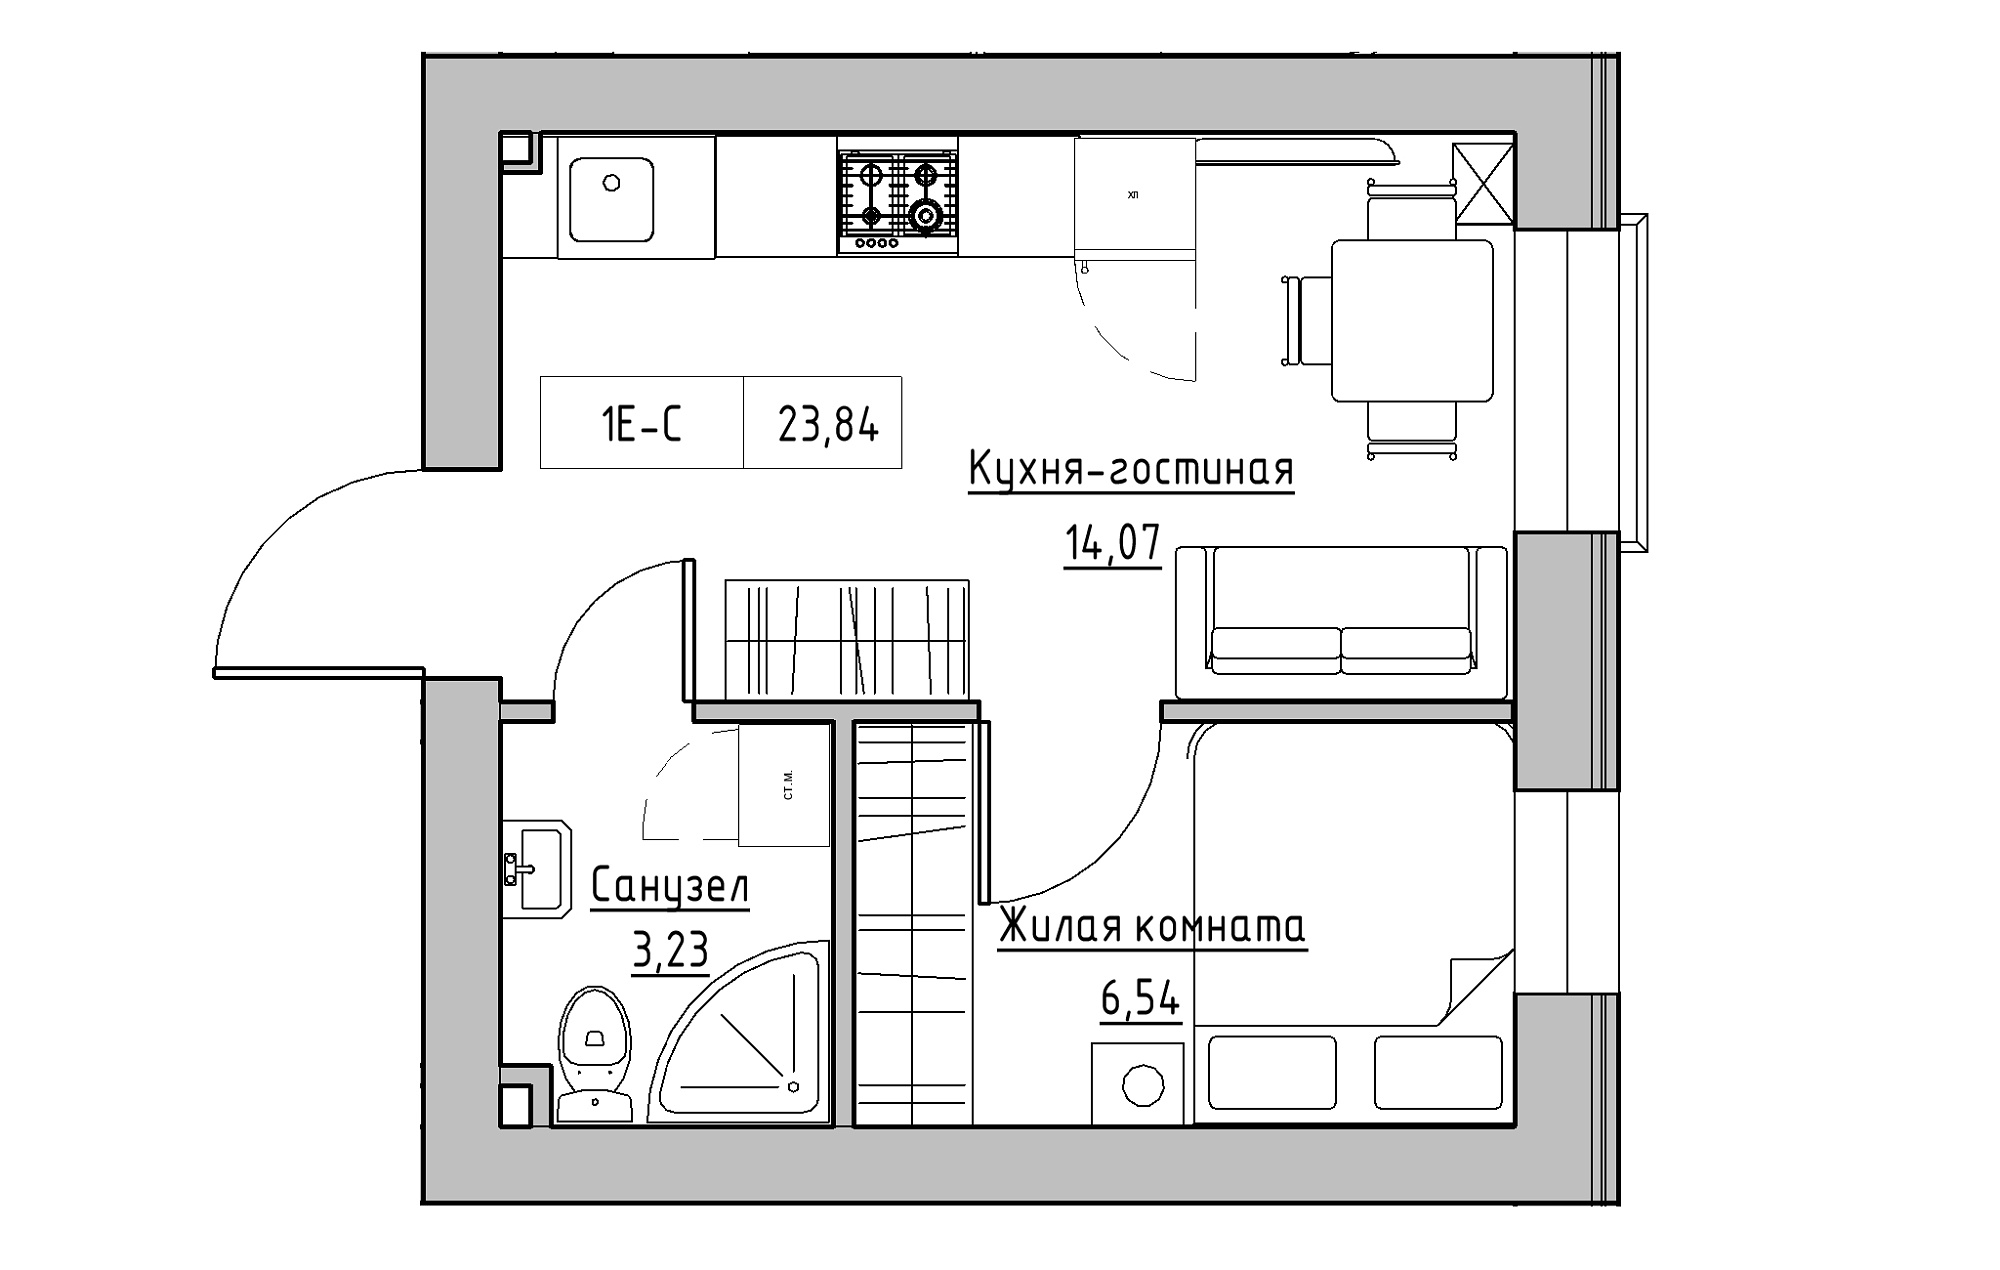 Планування 1-к квартира площею 23.84м2, KS-018-01/0011.